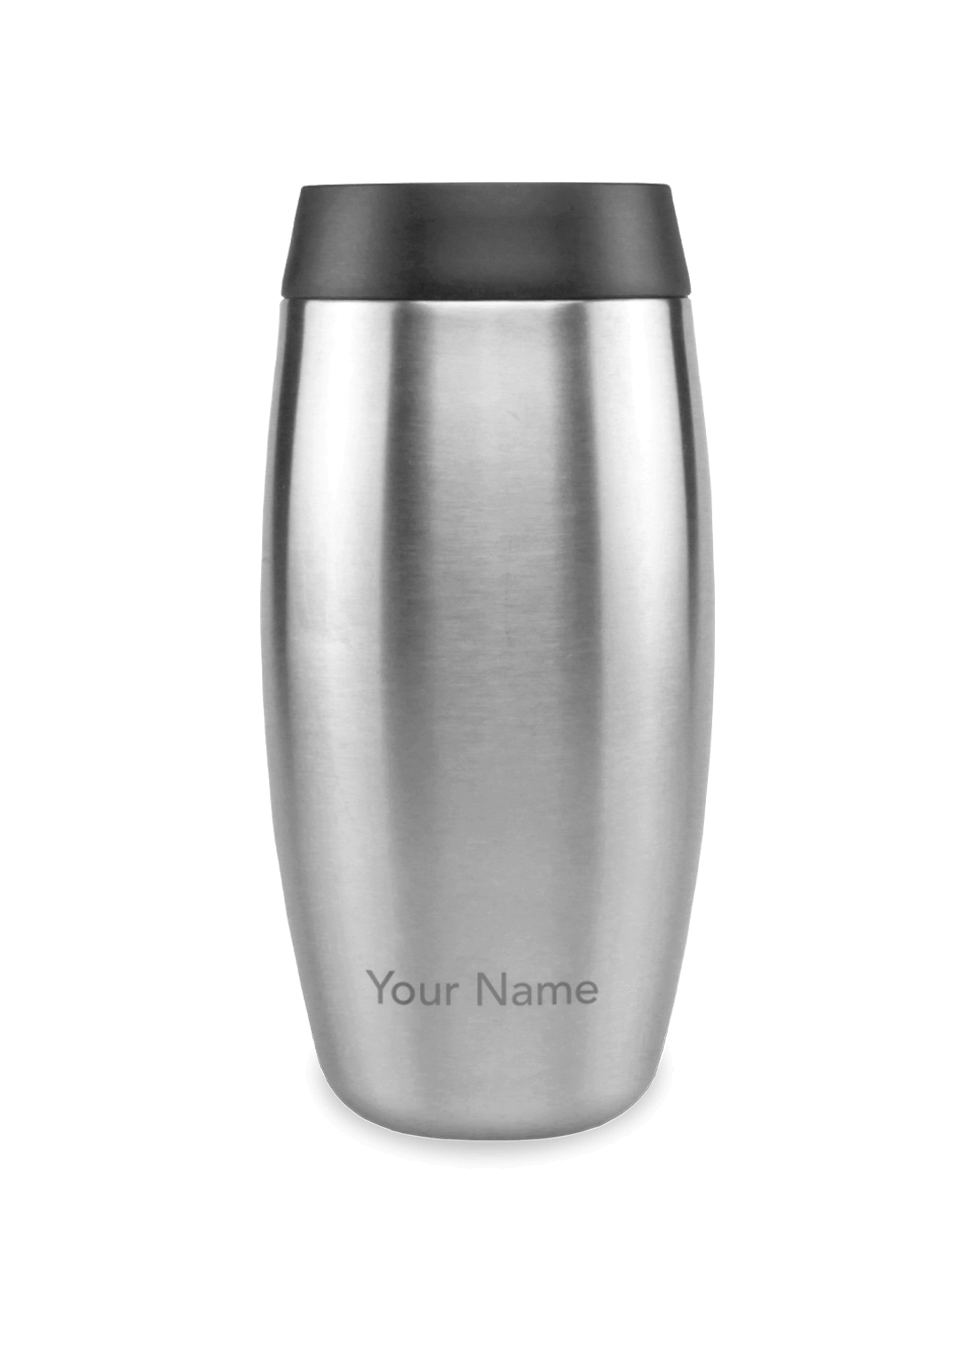 Personalised travel mug in stainless steel